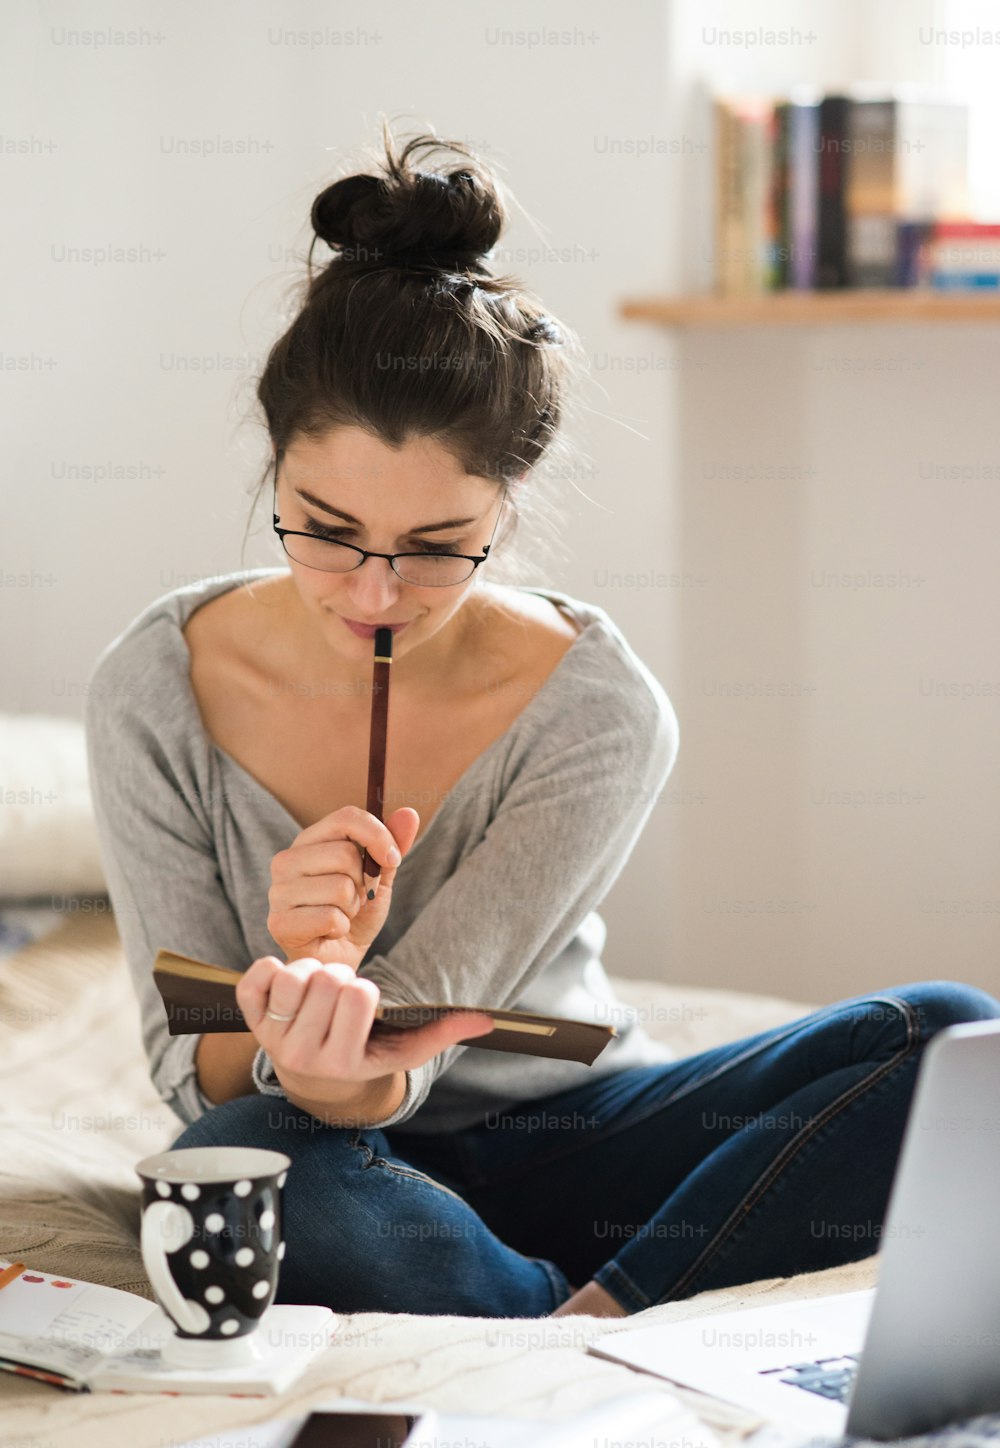 Hermosa joven sentada en la cama, trabajando en una computadora portátil, escribiendo algo en su cuaderno, oficina en casa.